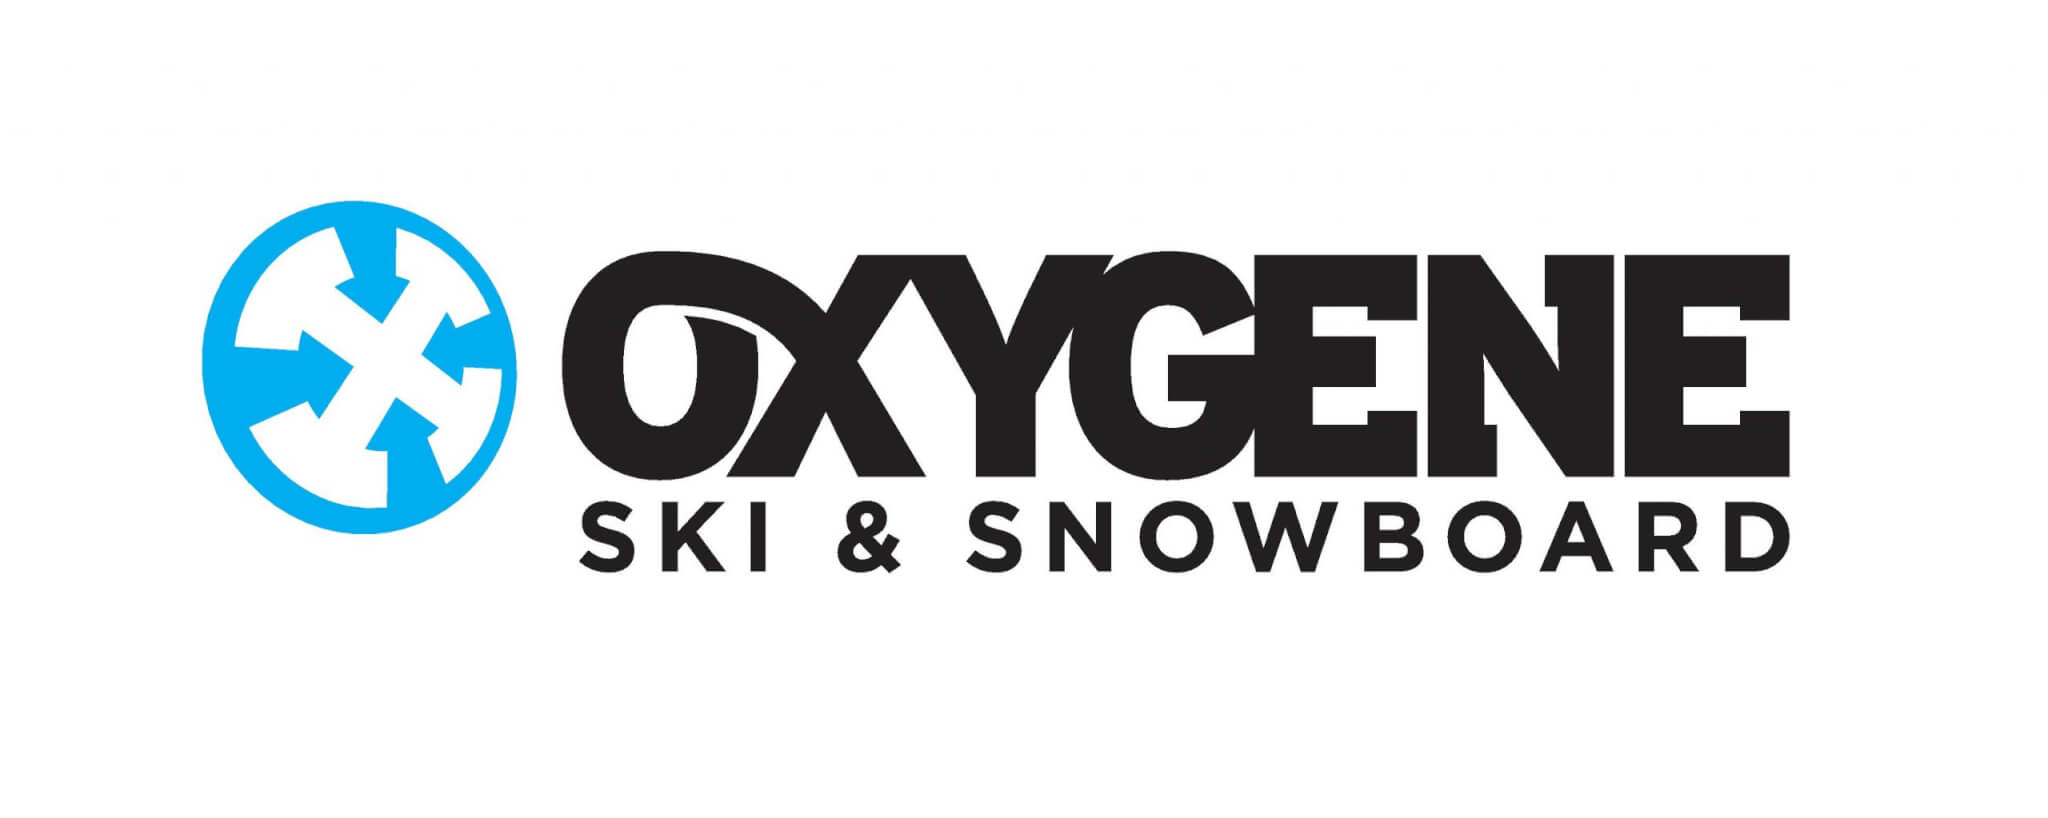 Ecole de ski & Snowboard Oxygène à Monetier les Bains